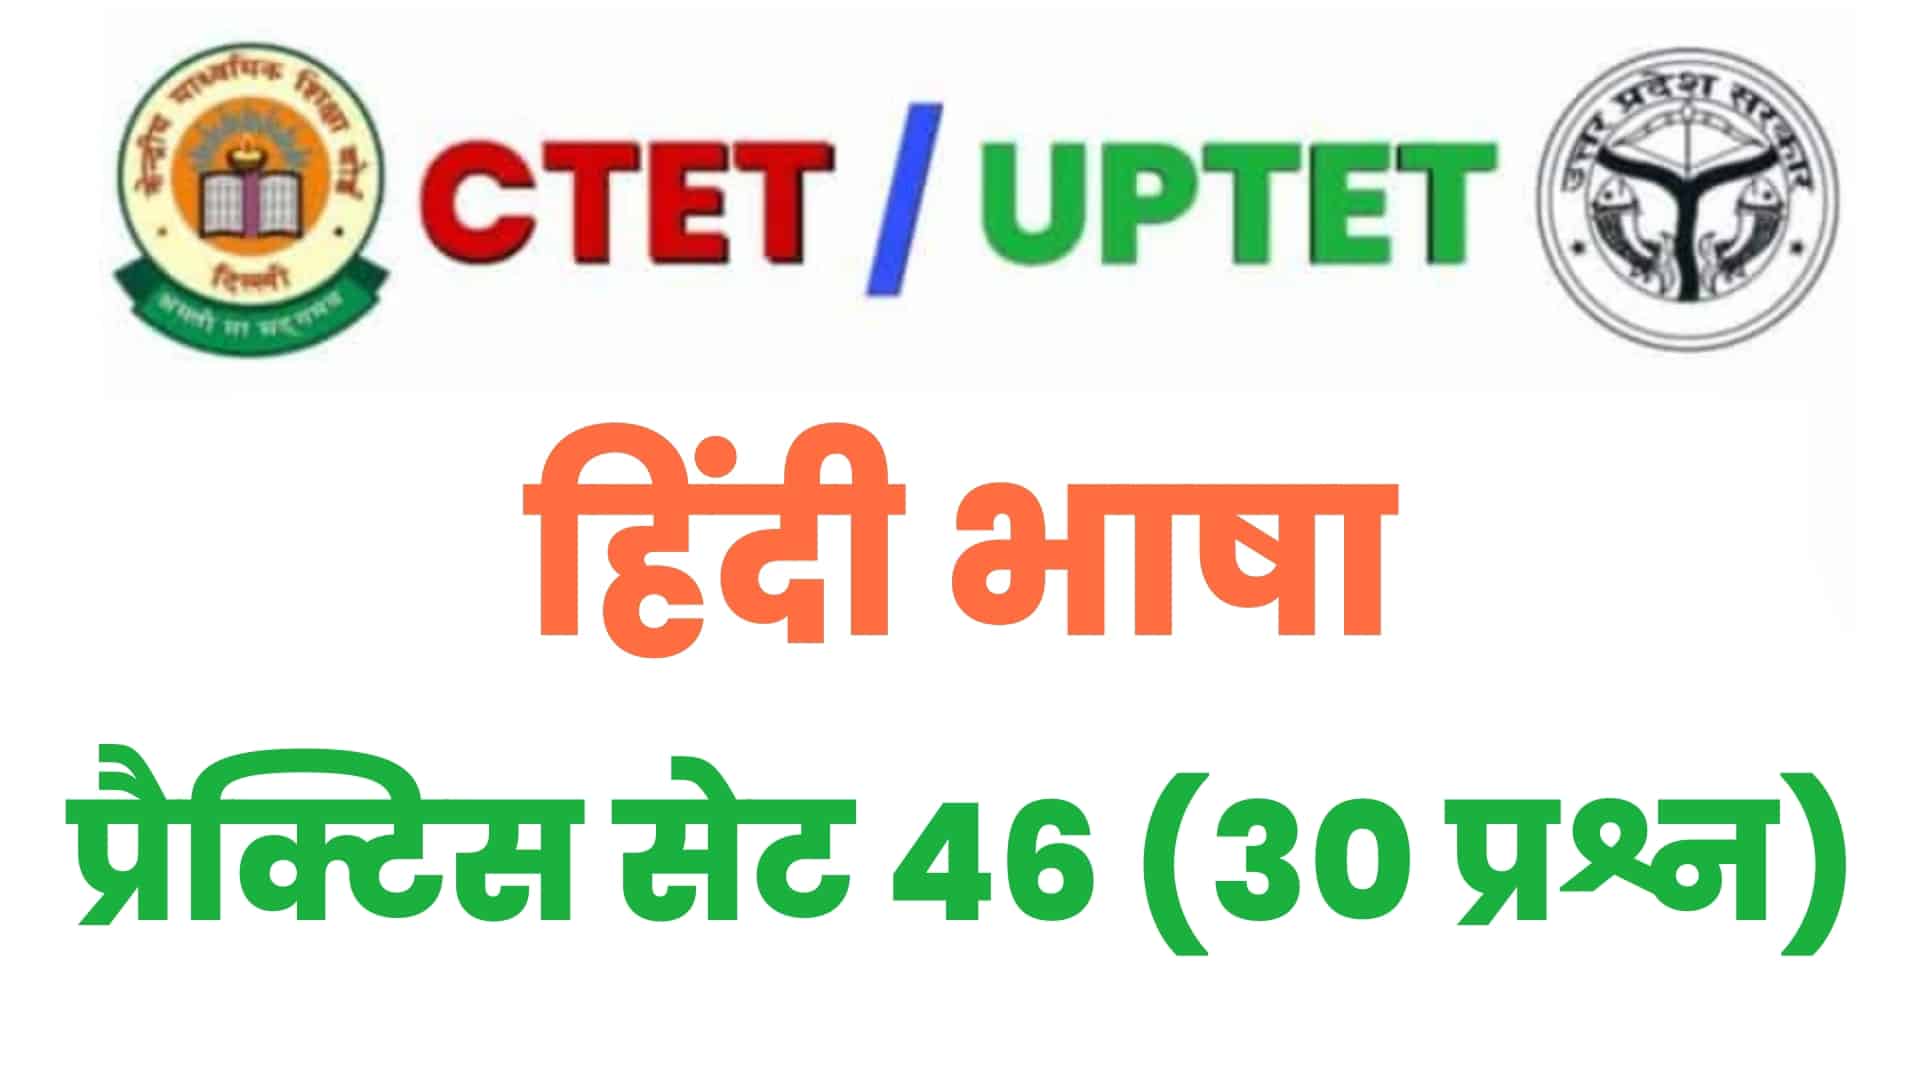 UPTET/CTET हिंदी भाषा प्रैक्टिस सेट 46 : परीक्षा में पूछे गए विगत वर्षों के इन 30 महत्वपूर्ण प्रश्नों का करें अध्ययन